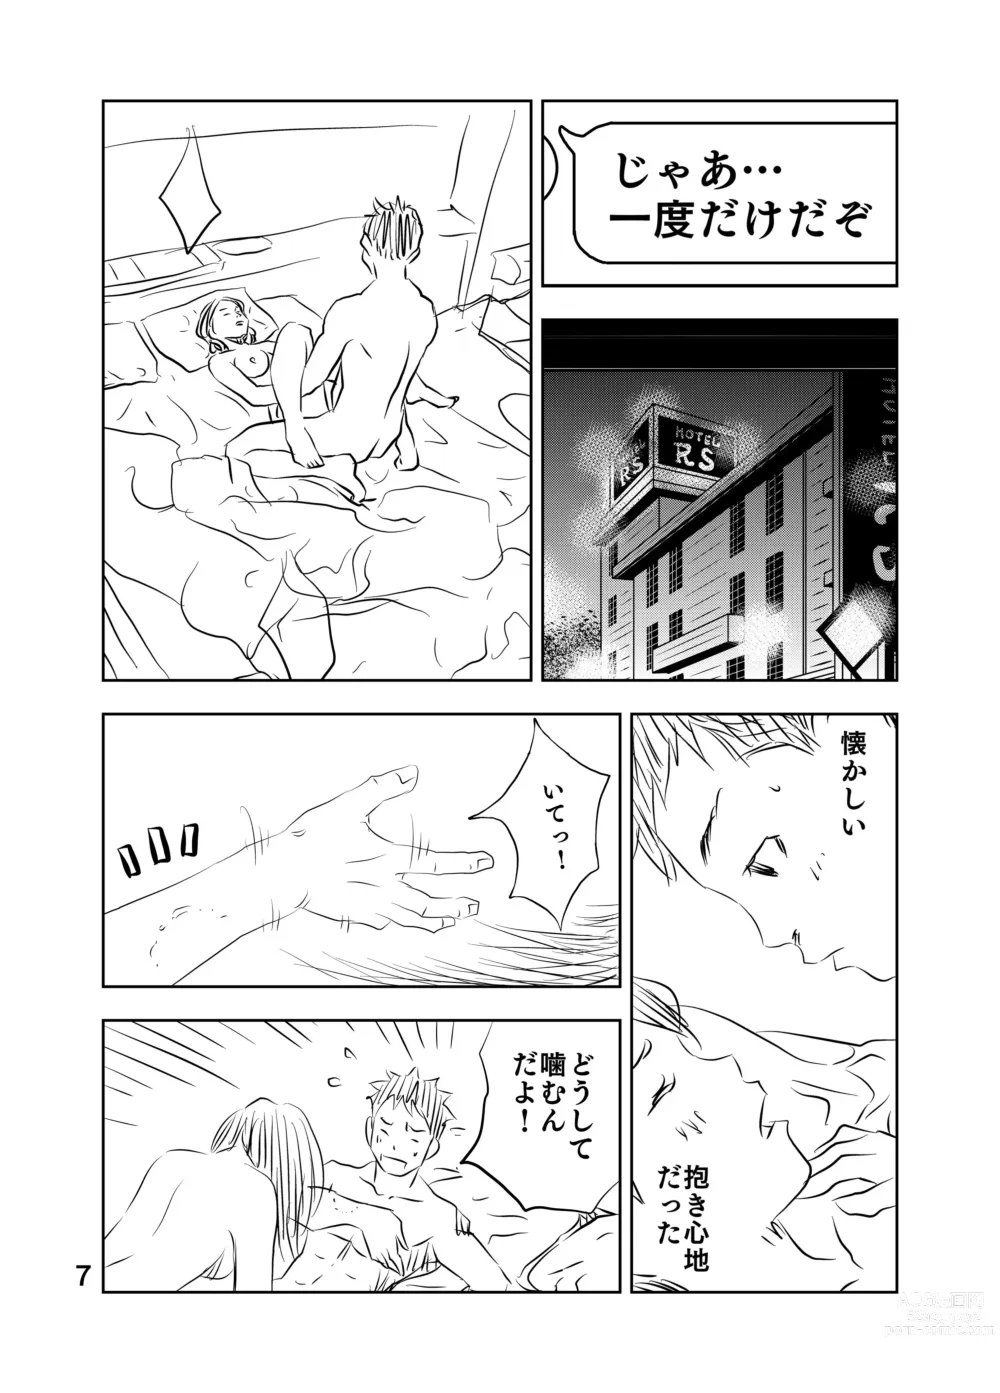 Page 21 of doujinshi Zurui Hito-tachi 2